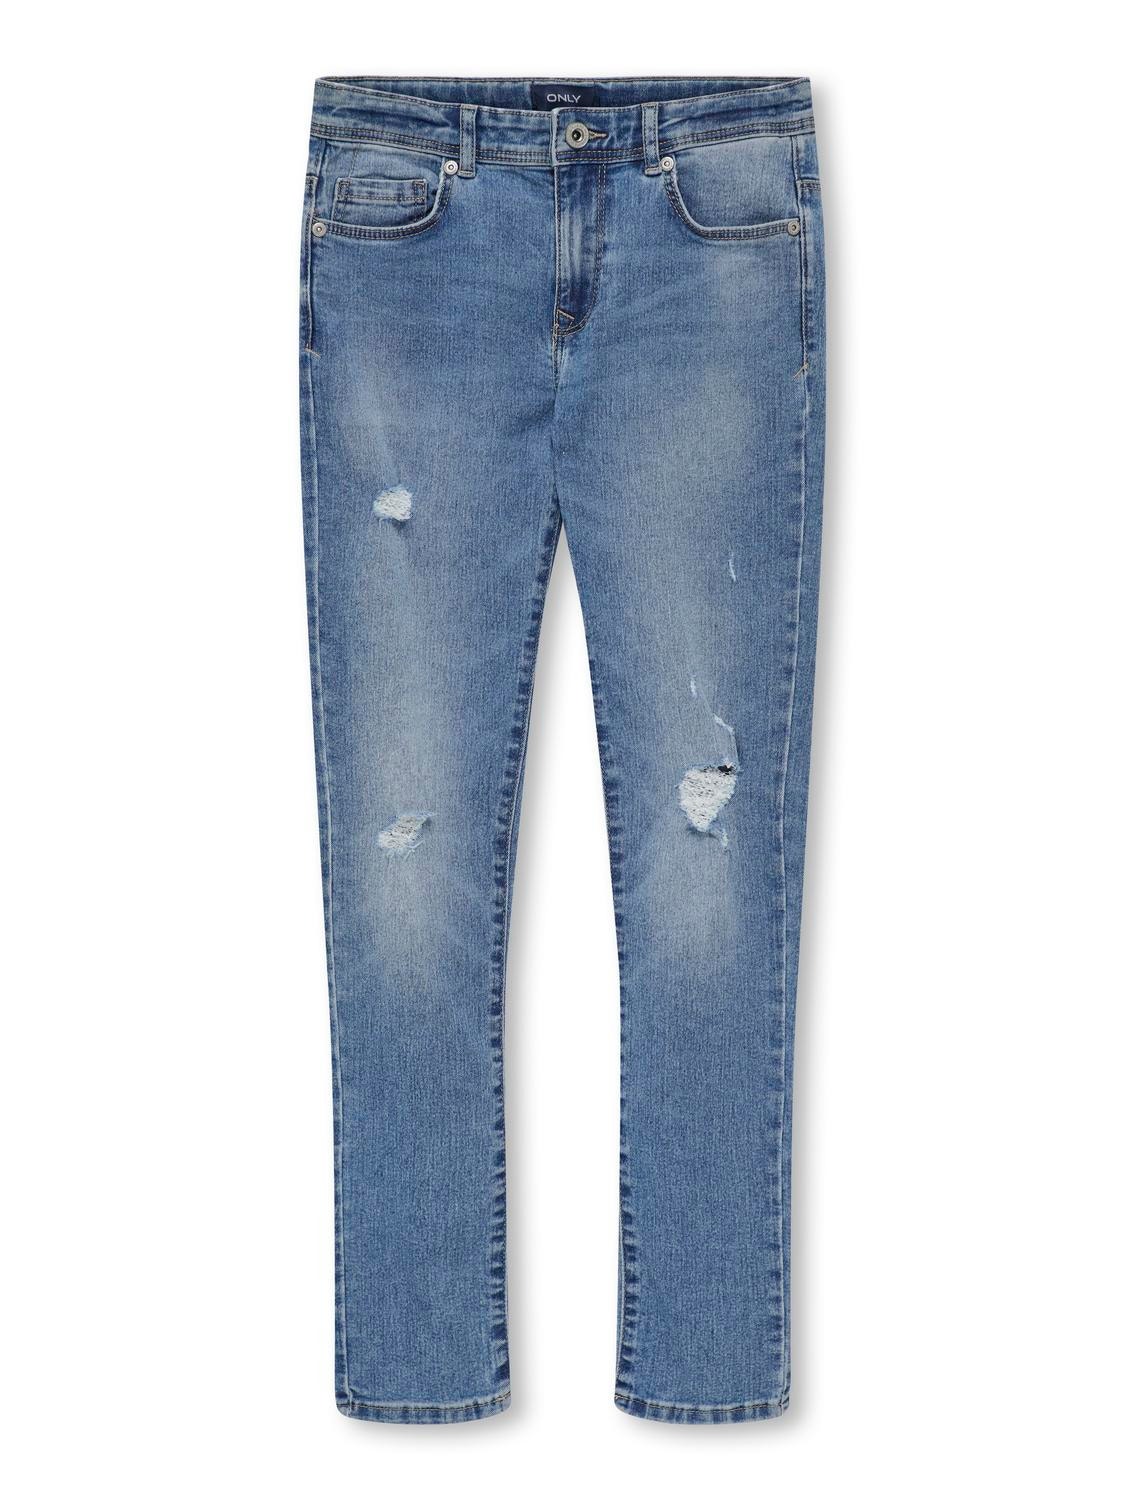 ONLY Skinny Fit Jeans -Light Blue Denim - 15280012